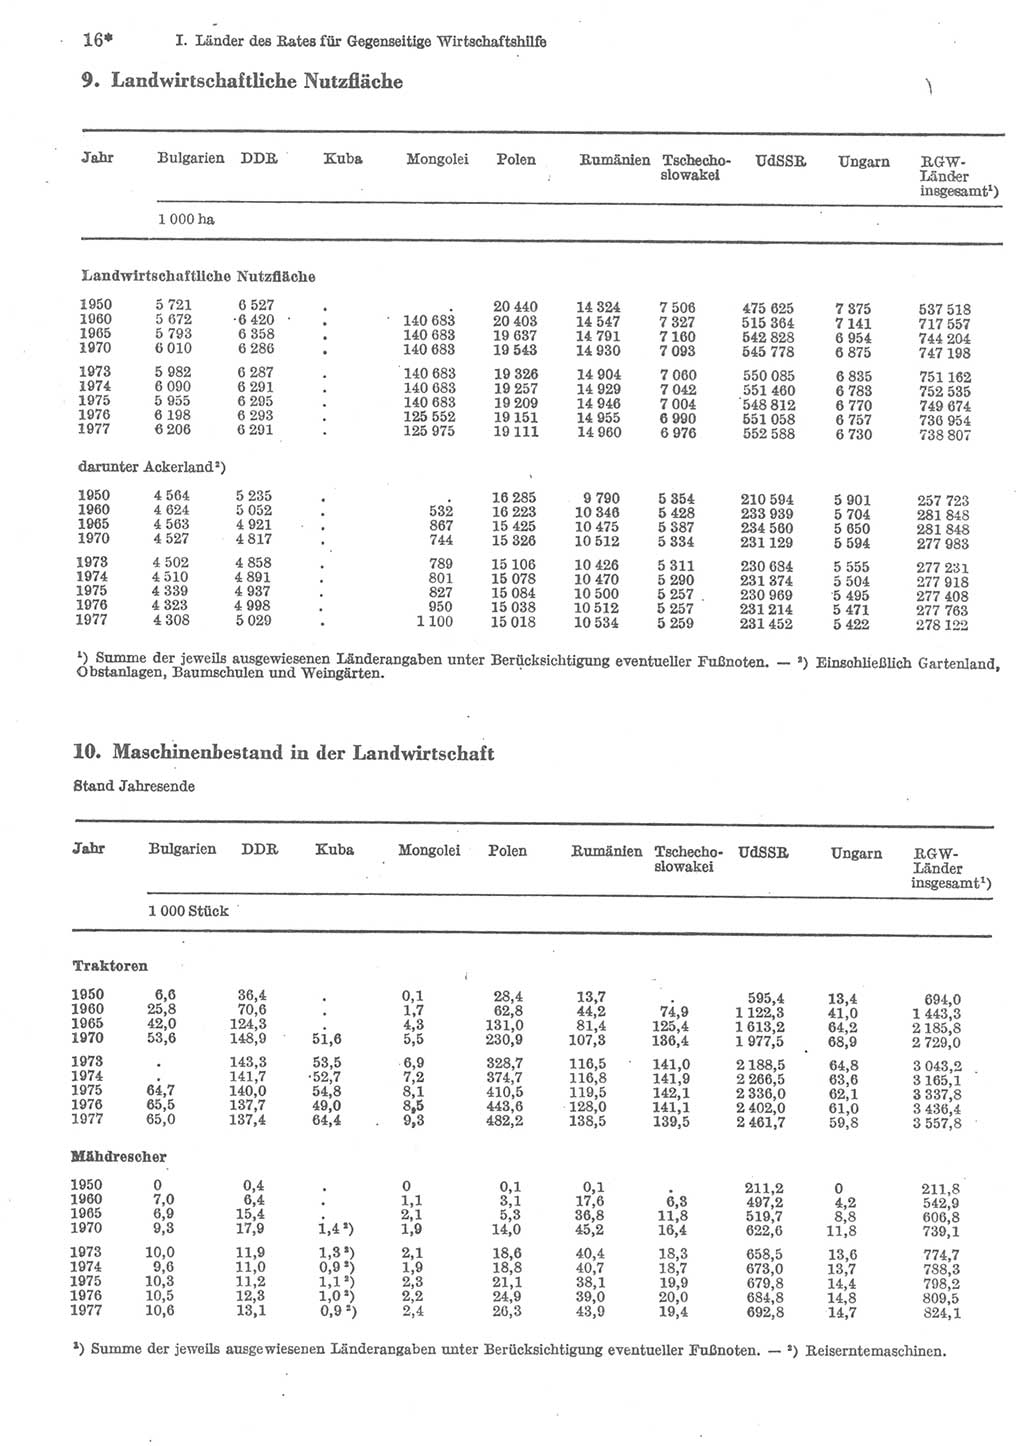 Statistisches Jahrbuch der Deutschen Demokratischen Republik (DDR) 1979, Seite 16 (Stat. Jb. DDR 1979, S. 16)